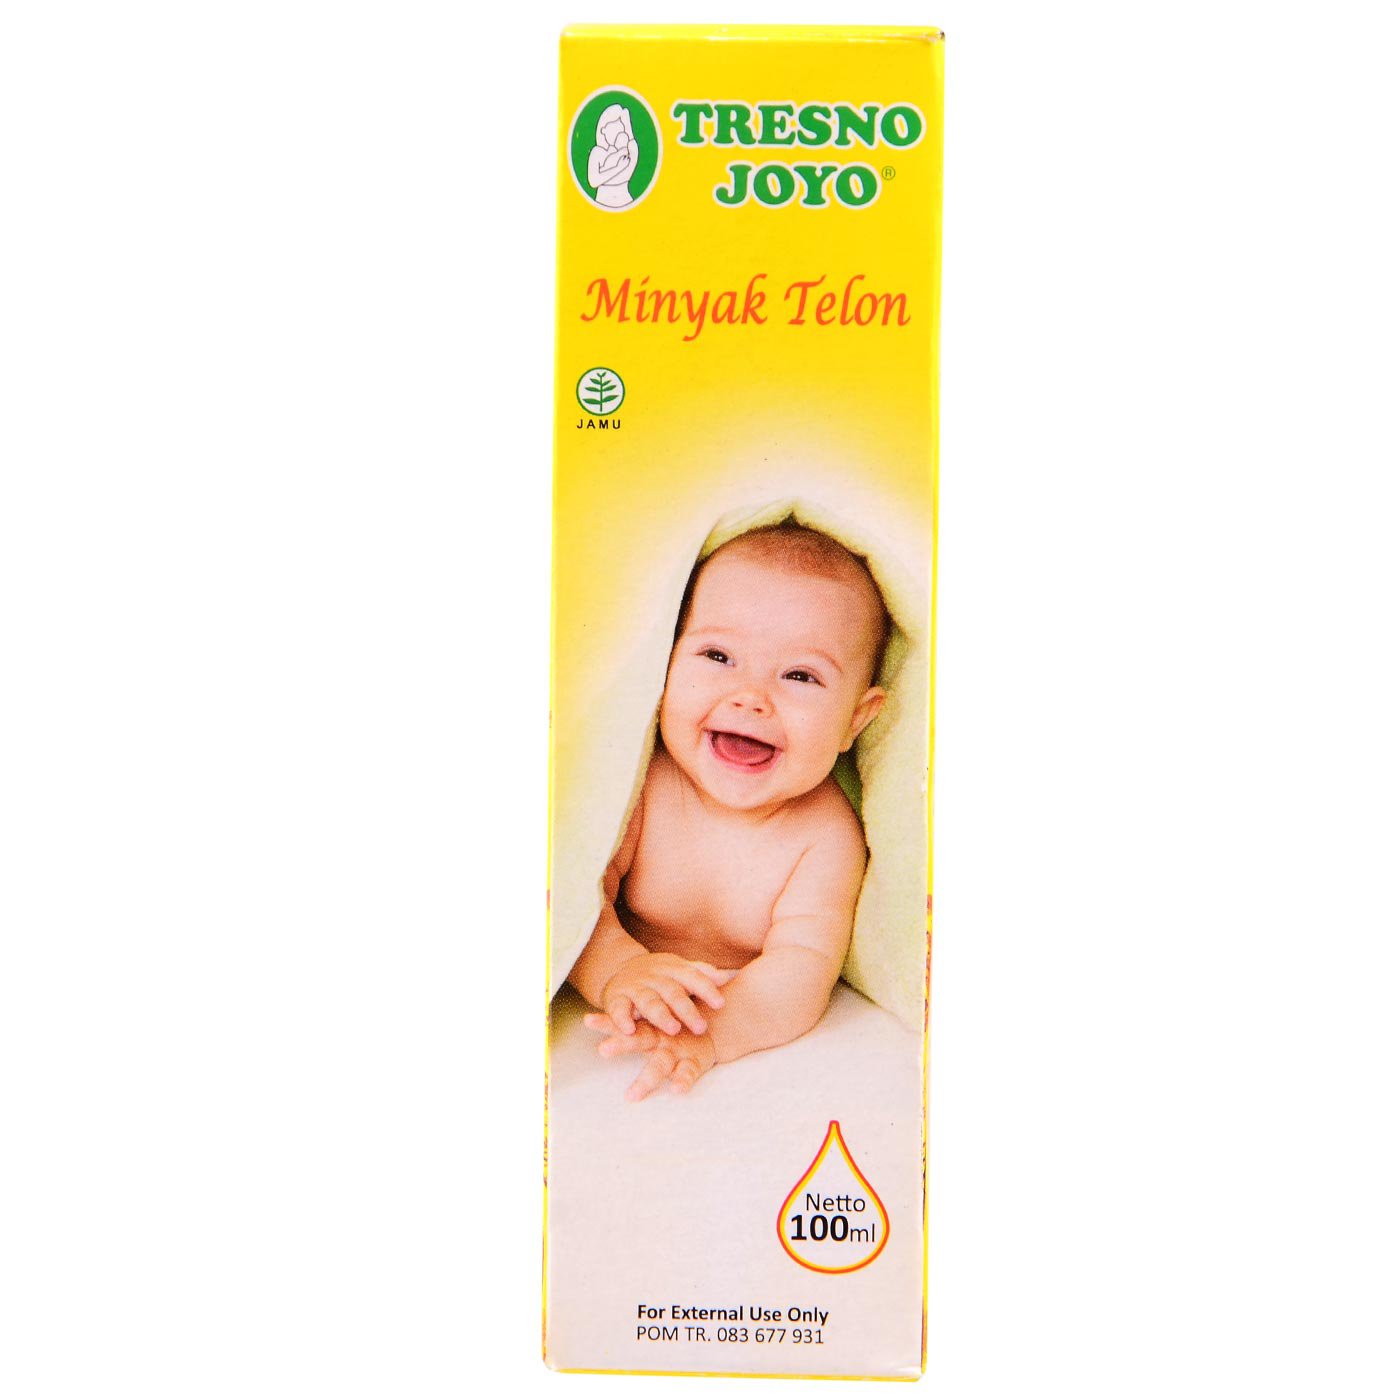 Tresno Joyo Children's Telon Oil - 100ml - Pack of 2